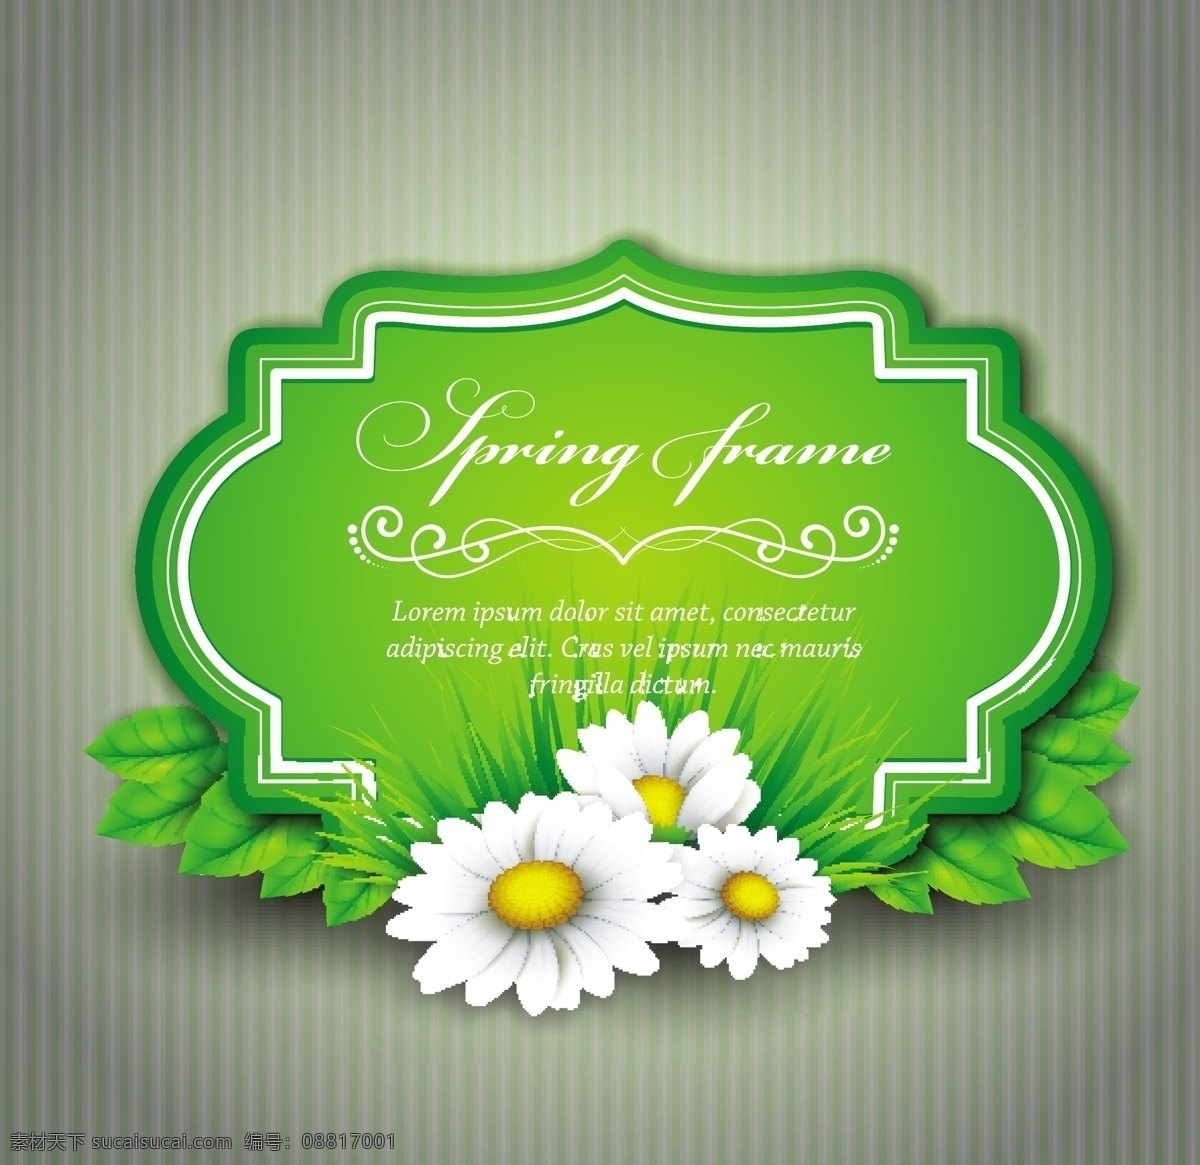 春季 促销 图标 花朵 鲜花 草 叶子 标签 底纹 背景 春节 宣传 广告展板 矢量素材 自然风光 空间环境 绿色